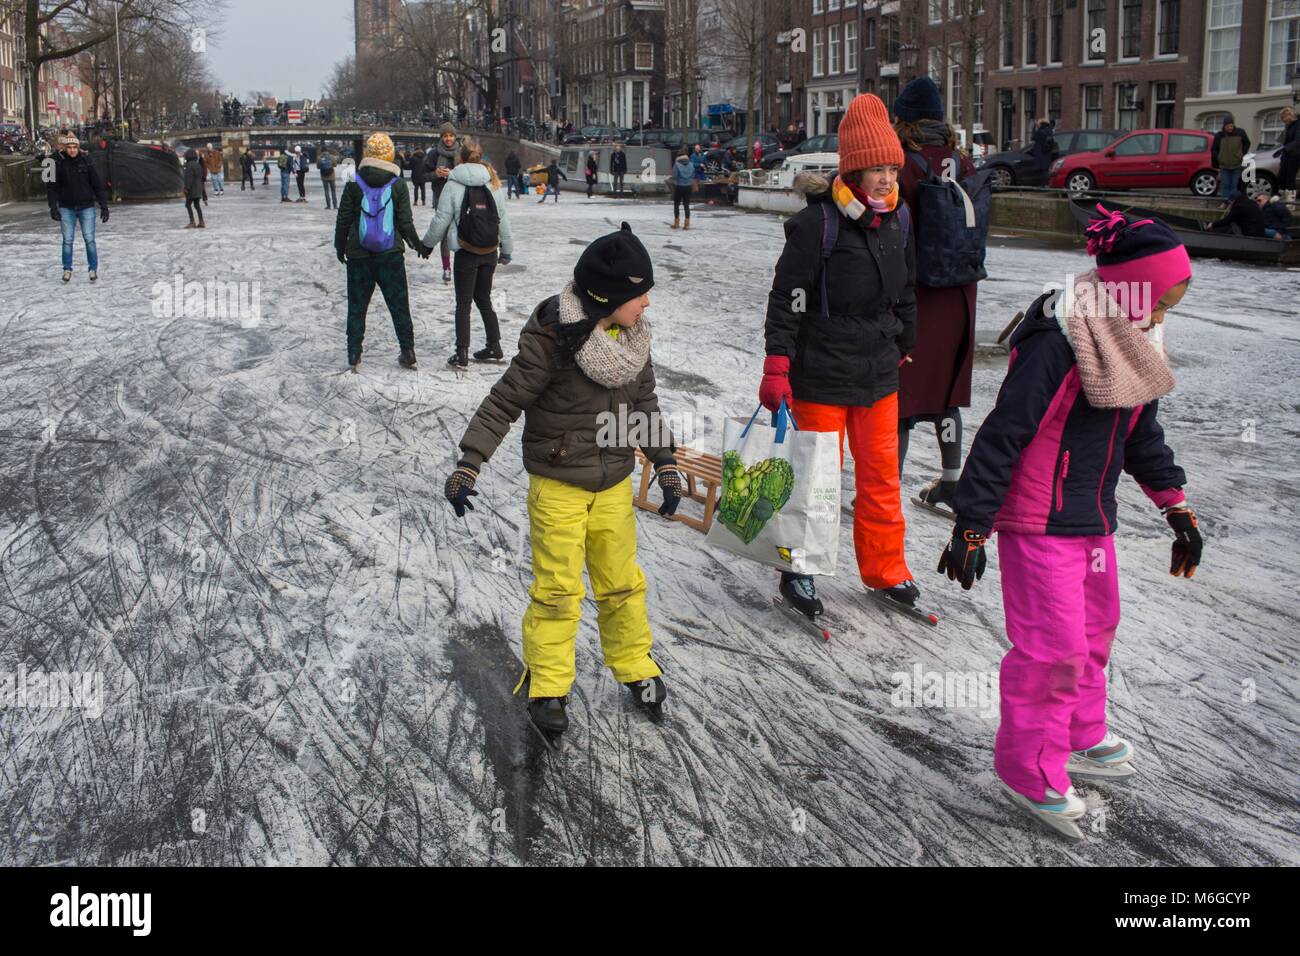 Pattinaggio su ghiaccio sui canali di Amsterdam. L'ultima volta in cui i canali sono stati congelati è stato nel febbraio 2015. Foto Stock